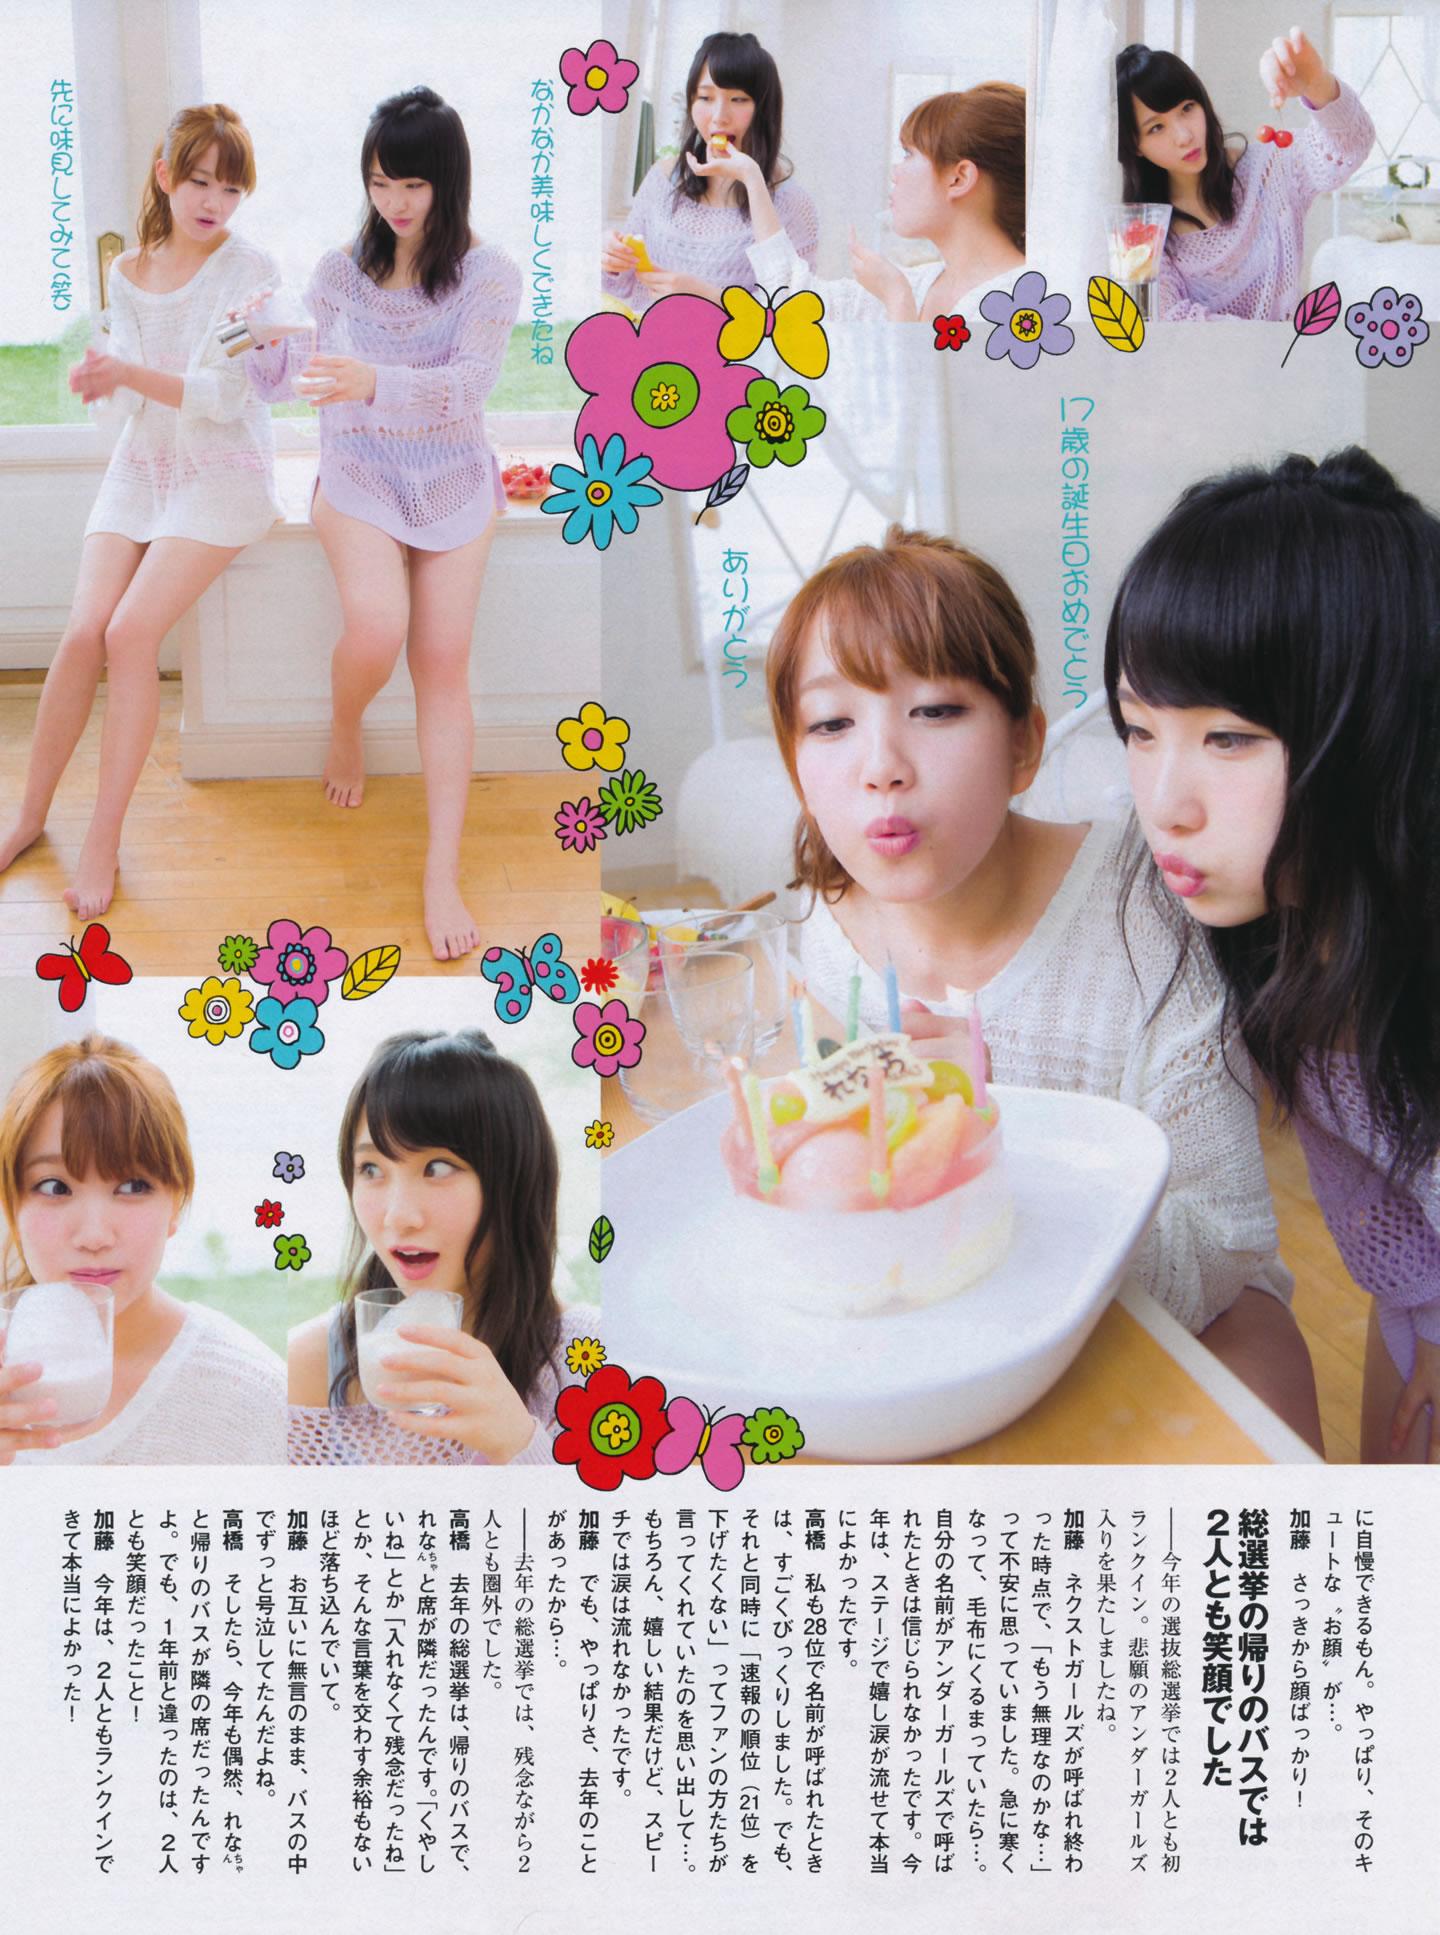 日本女子偶像组合AKB48成员特刊封面写真,日本女子偶像组合AKB48成员特刊封面写真